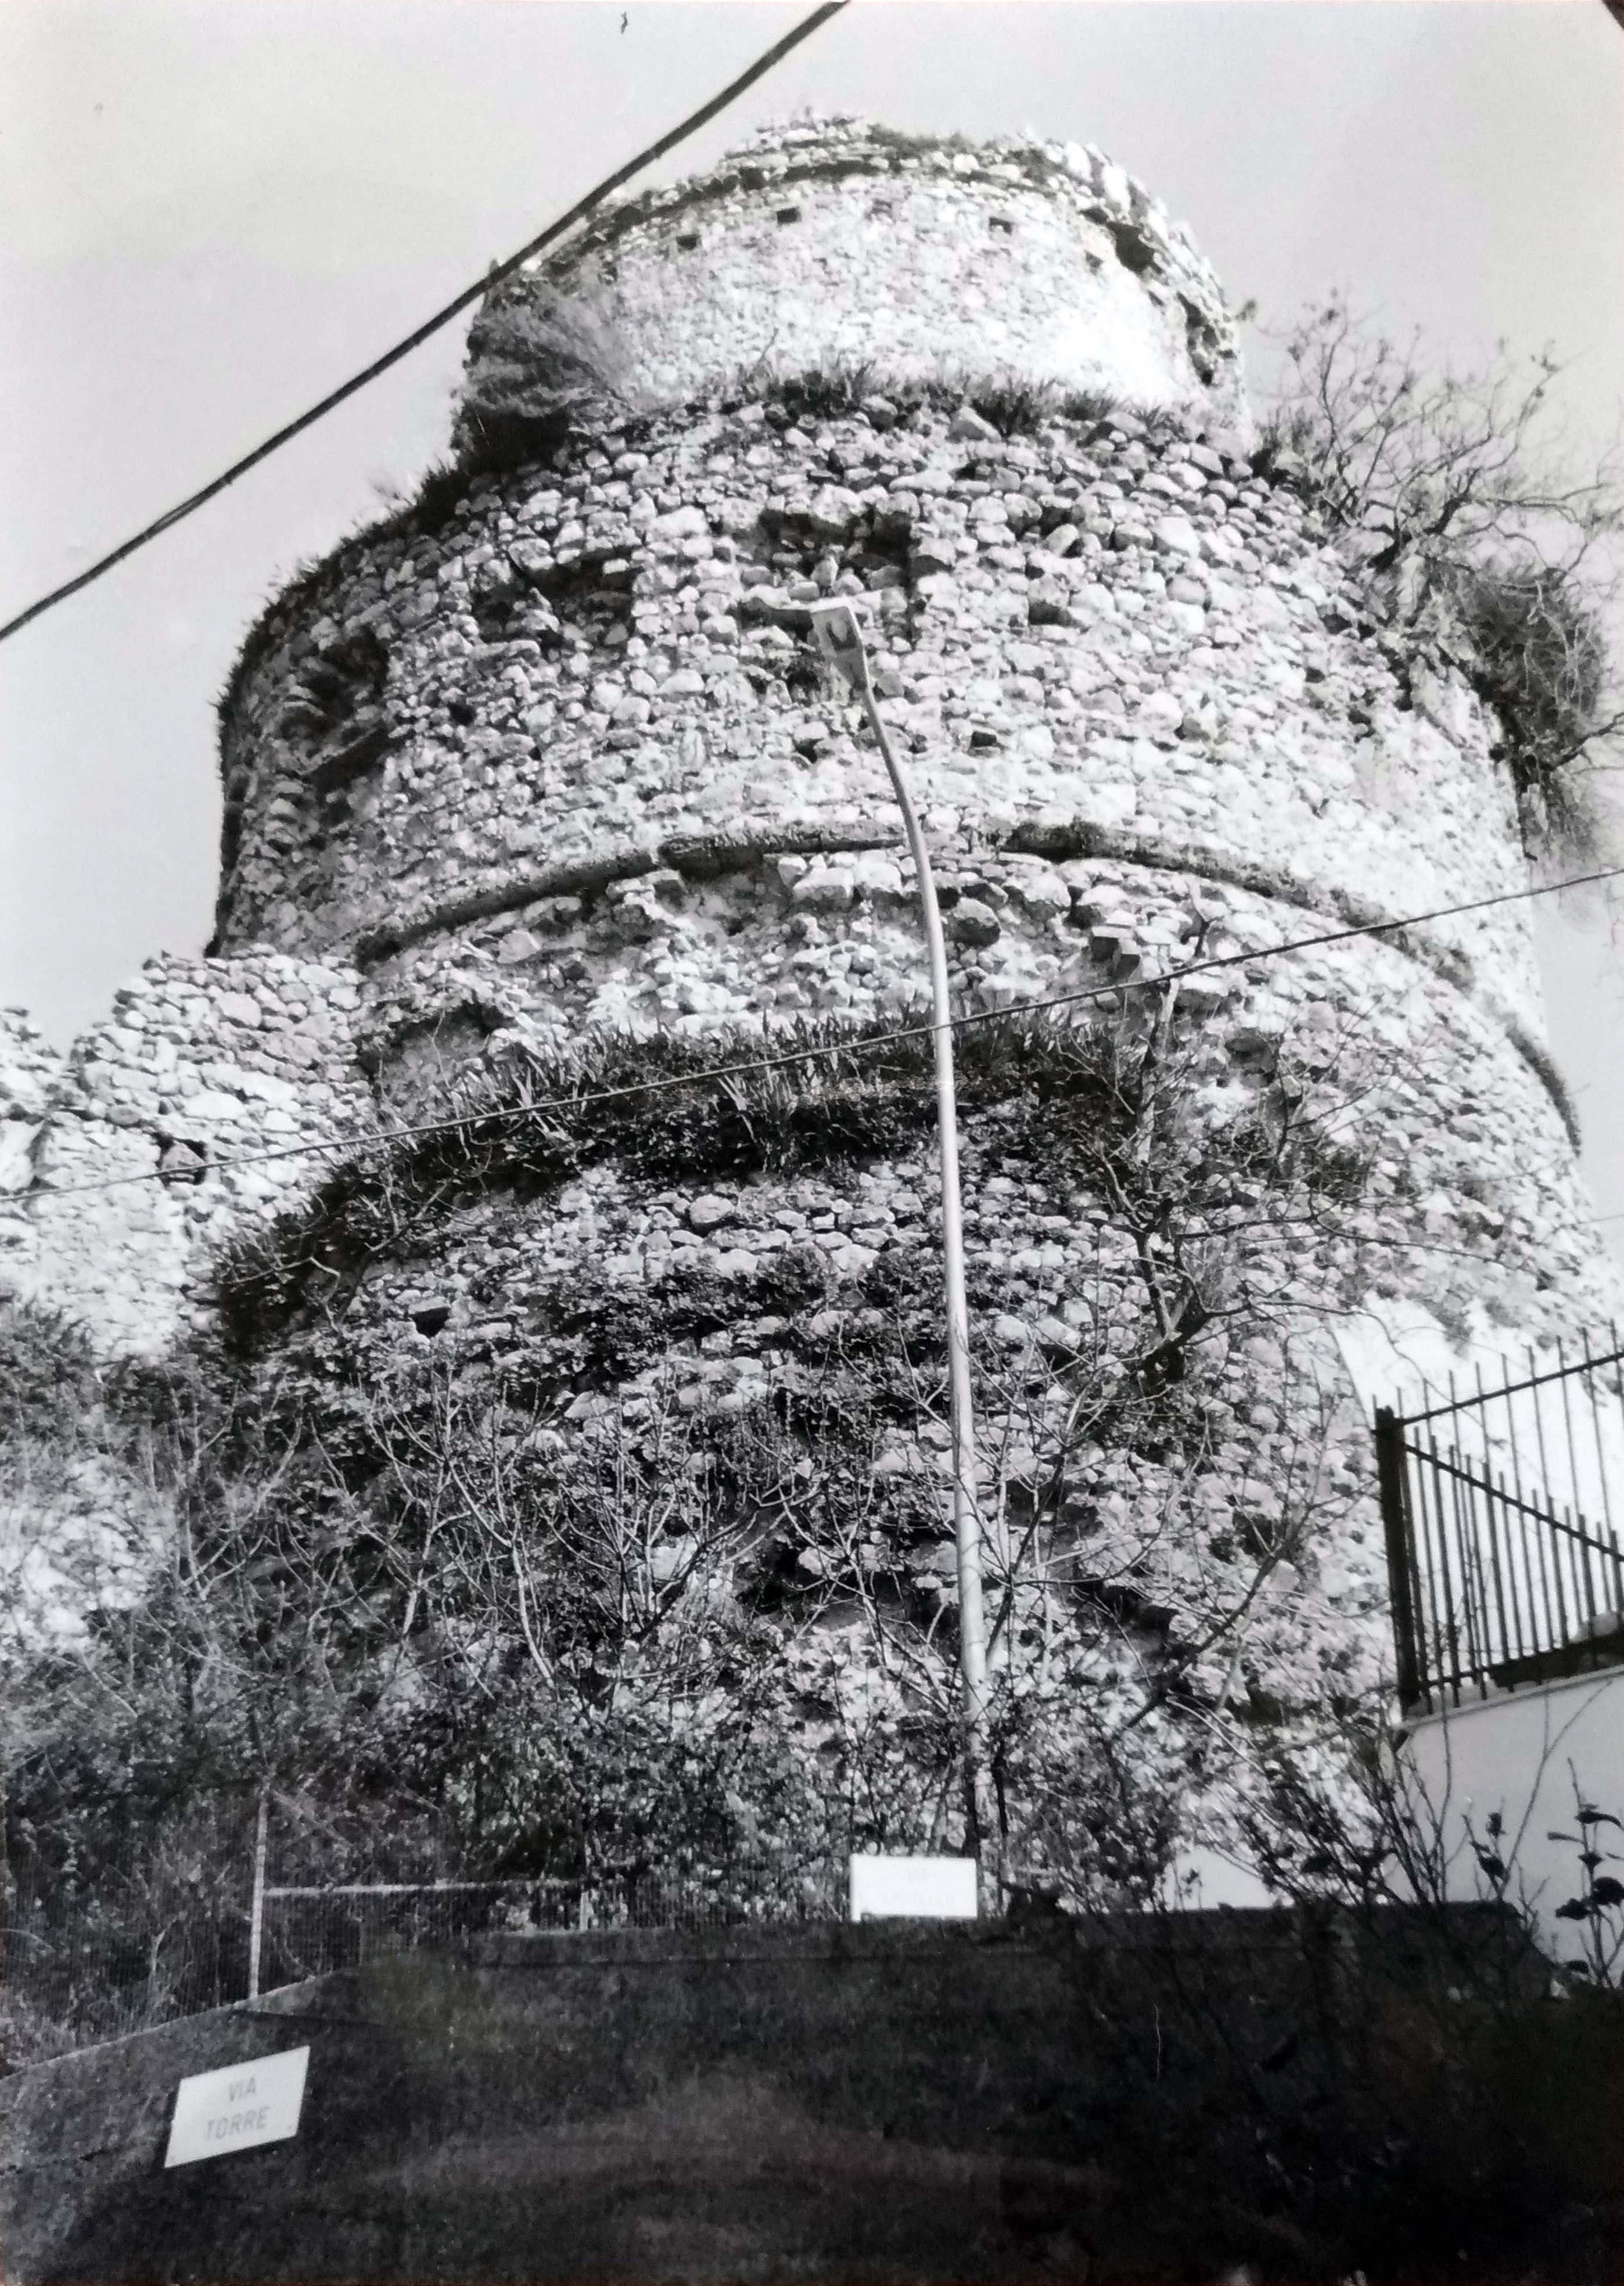 torre medioevale (torre, difensiva) - Capriati a Volturno (CE) 